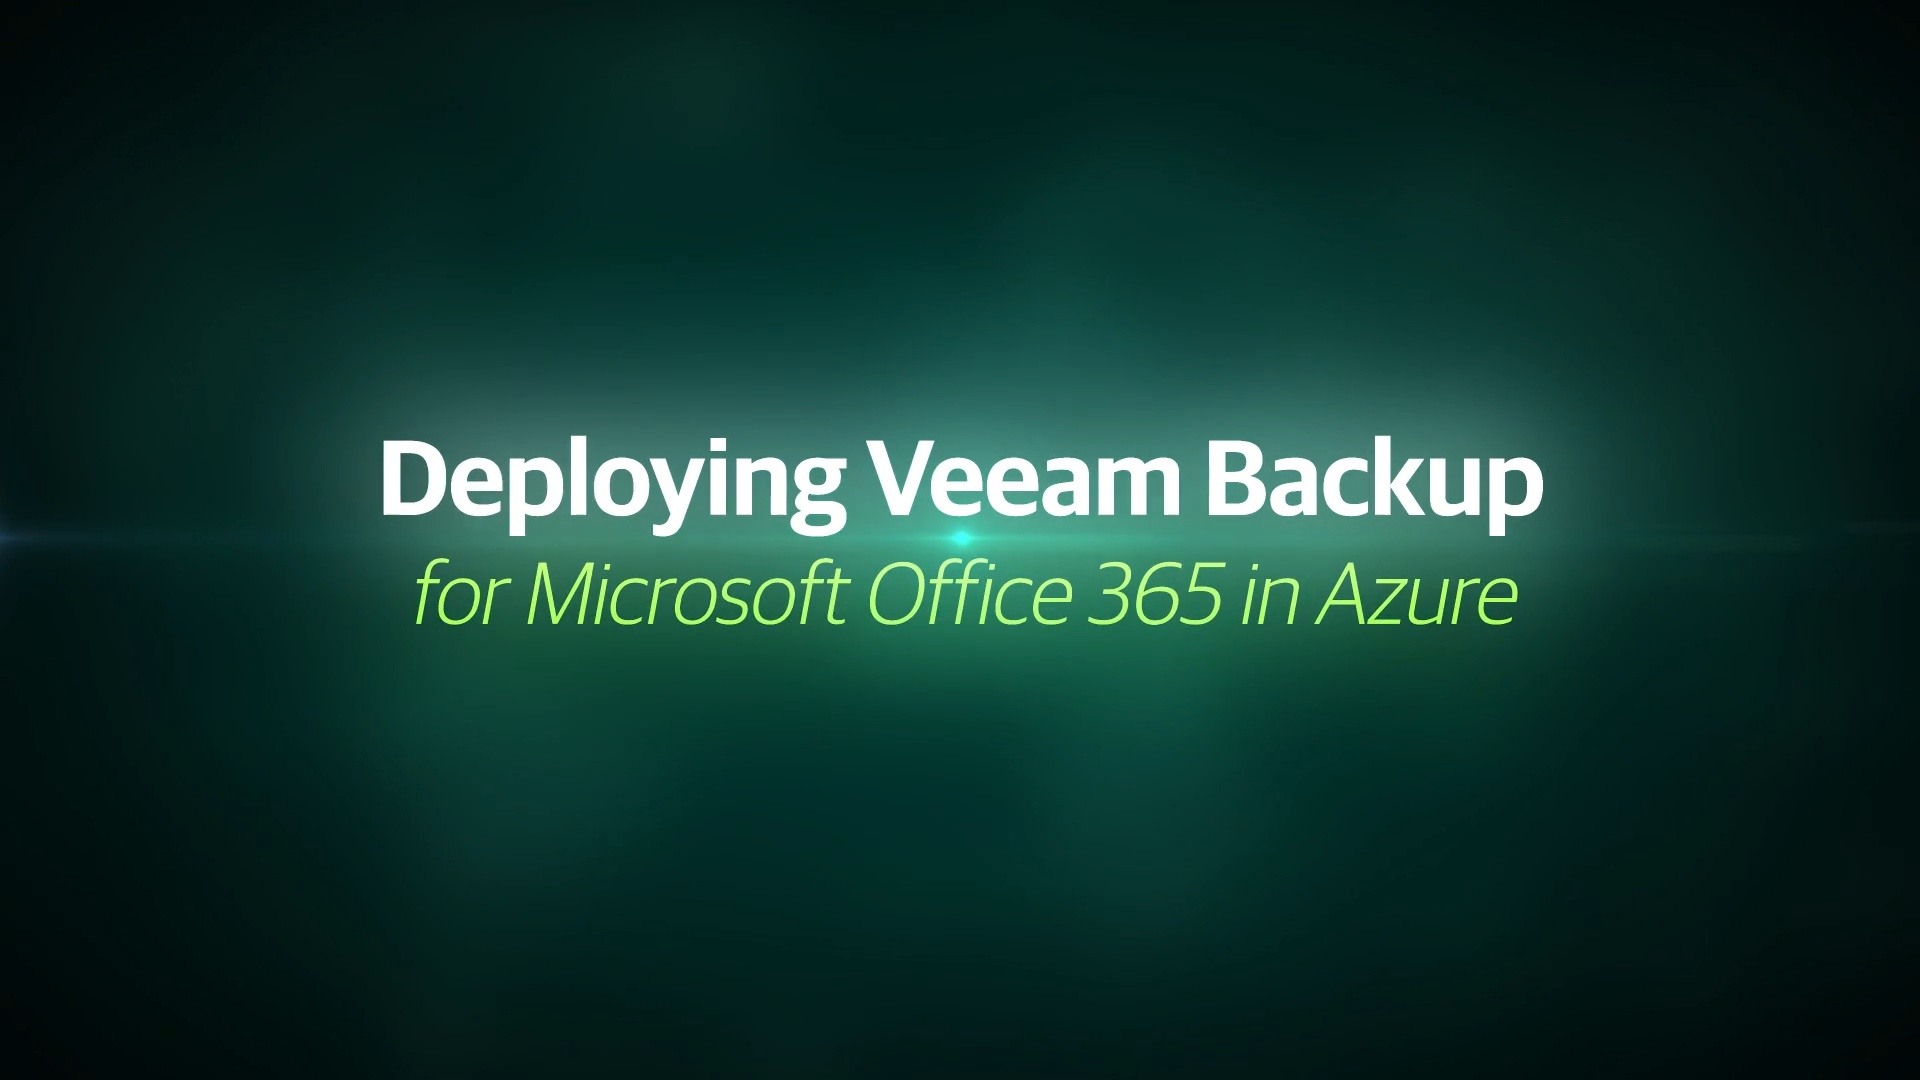 CV-1820_Veeam Backup for Office 365 Deployed in Azure_EN